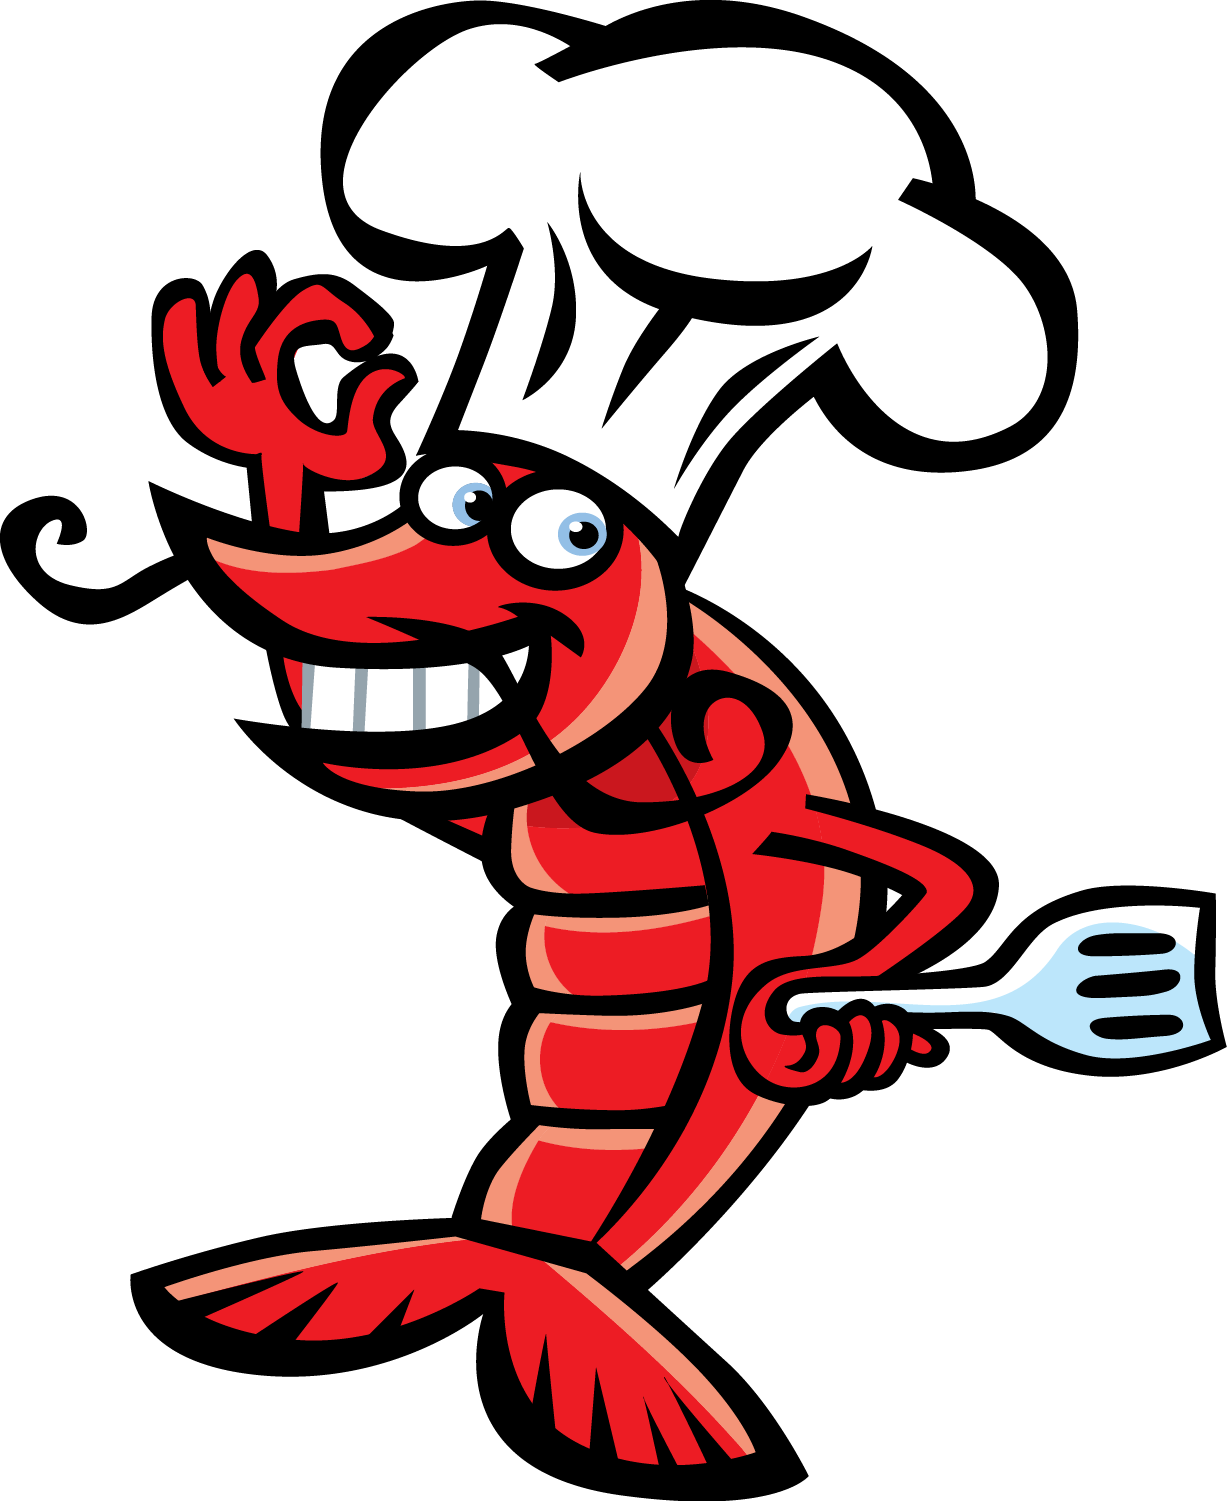 Dancing Crayfish Cartoon - photogram